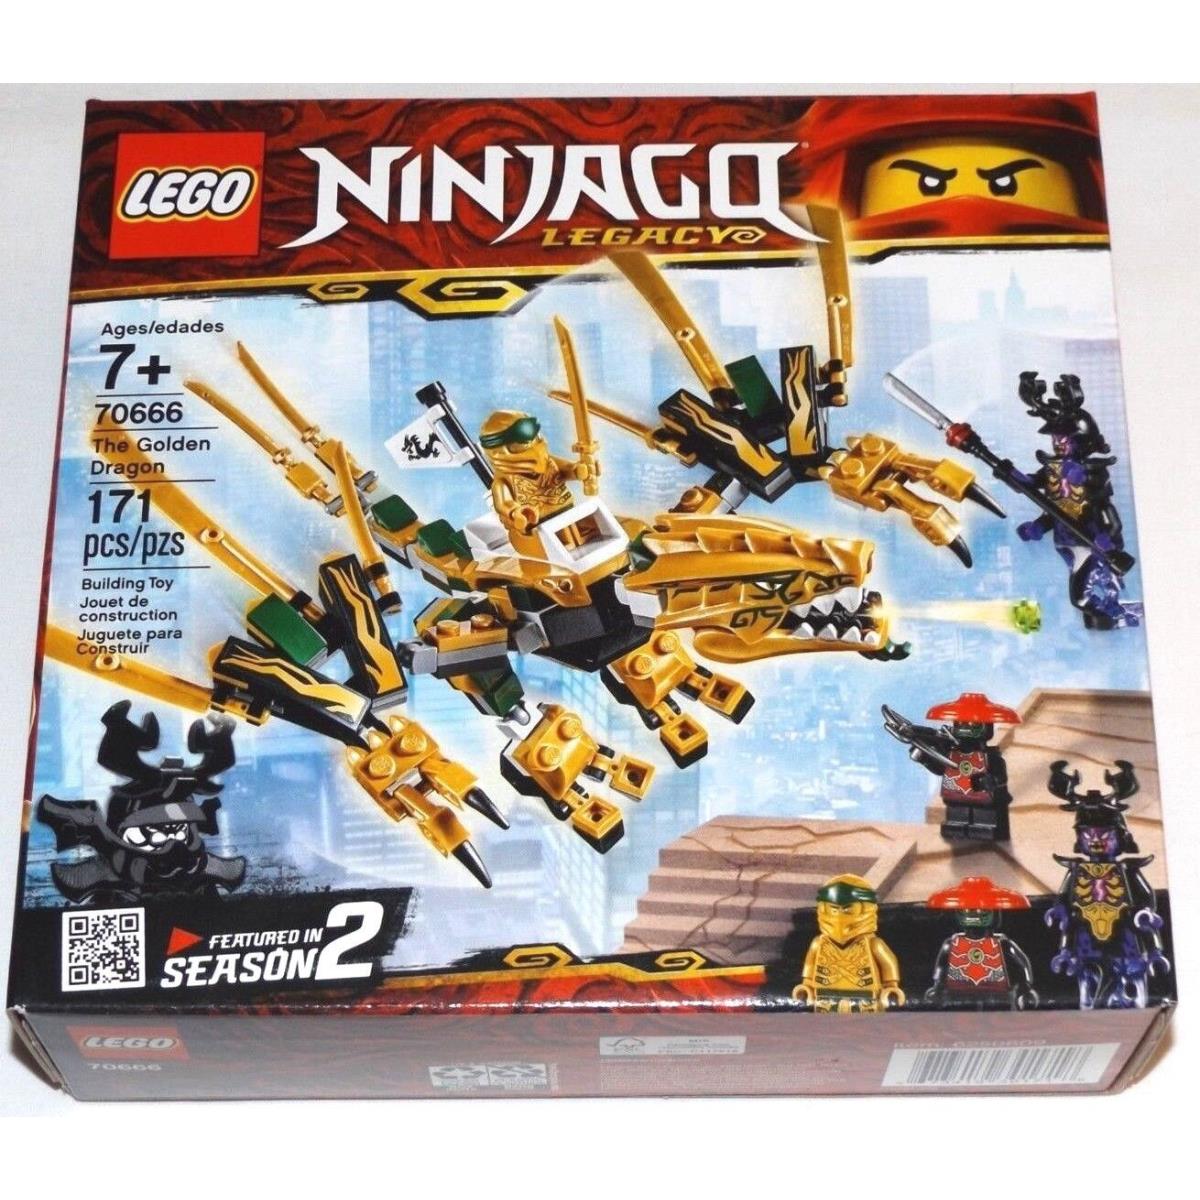 Lego 70666 The Golden Dragon Ninjago Legacy Lloyd Ninja Overlord